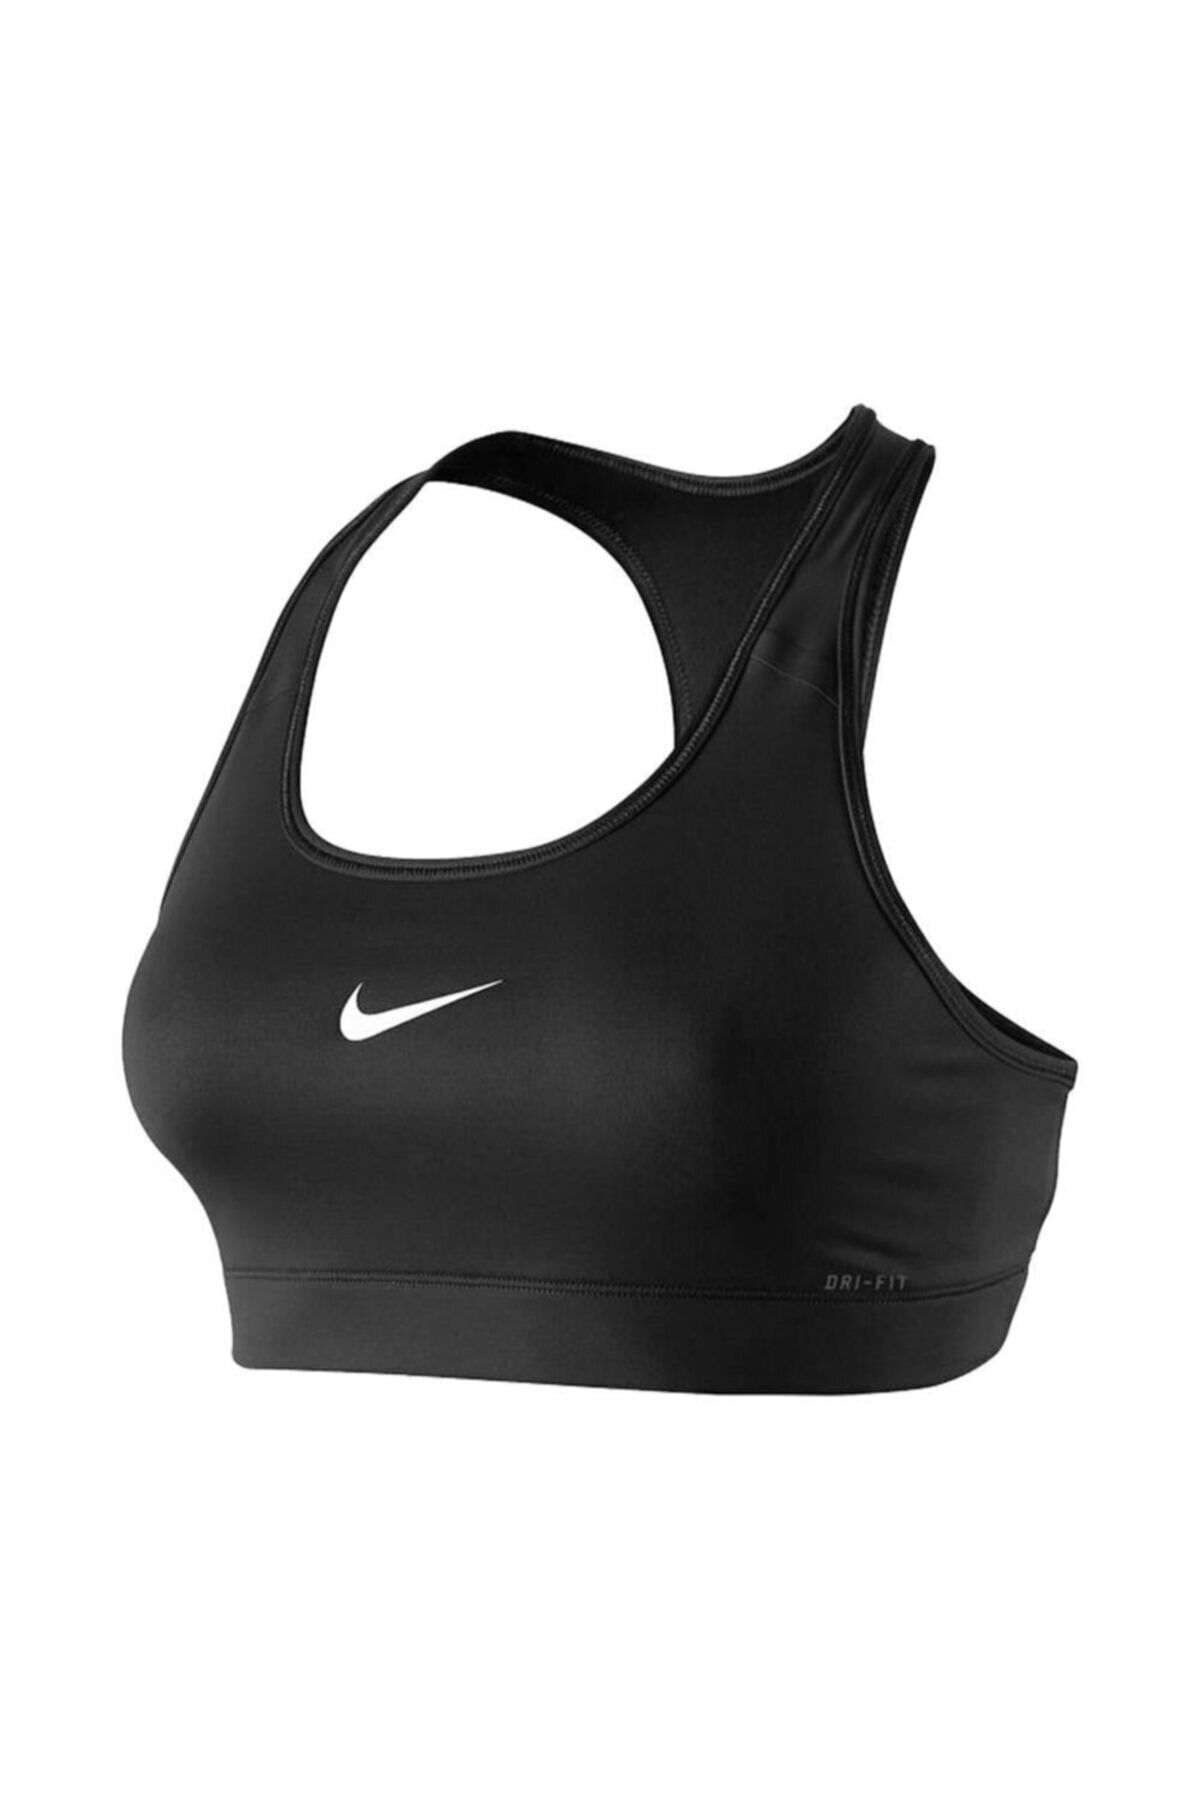 Nike Pro Set on Mercari  Black nikes, Nike sports bra, Short sets